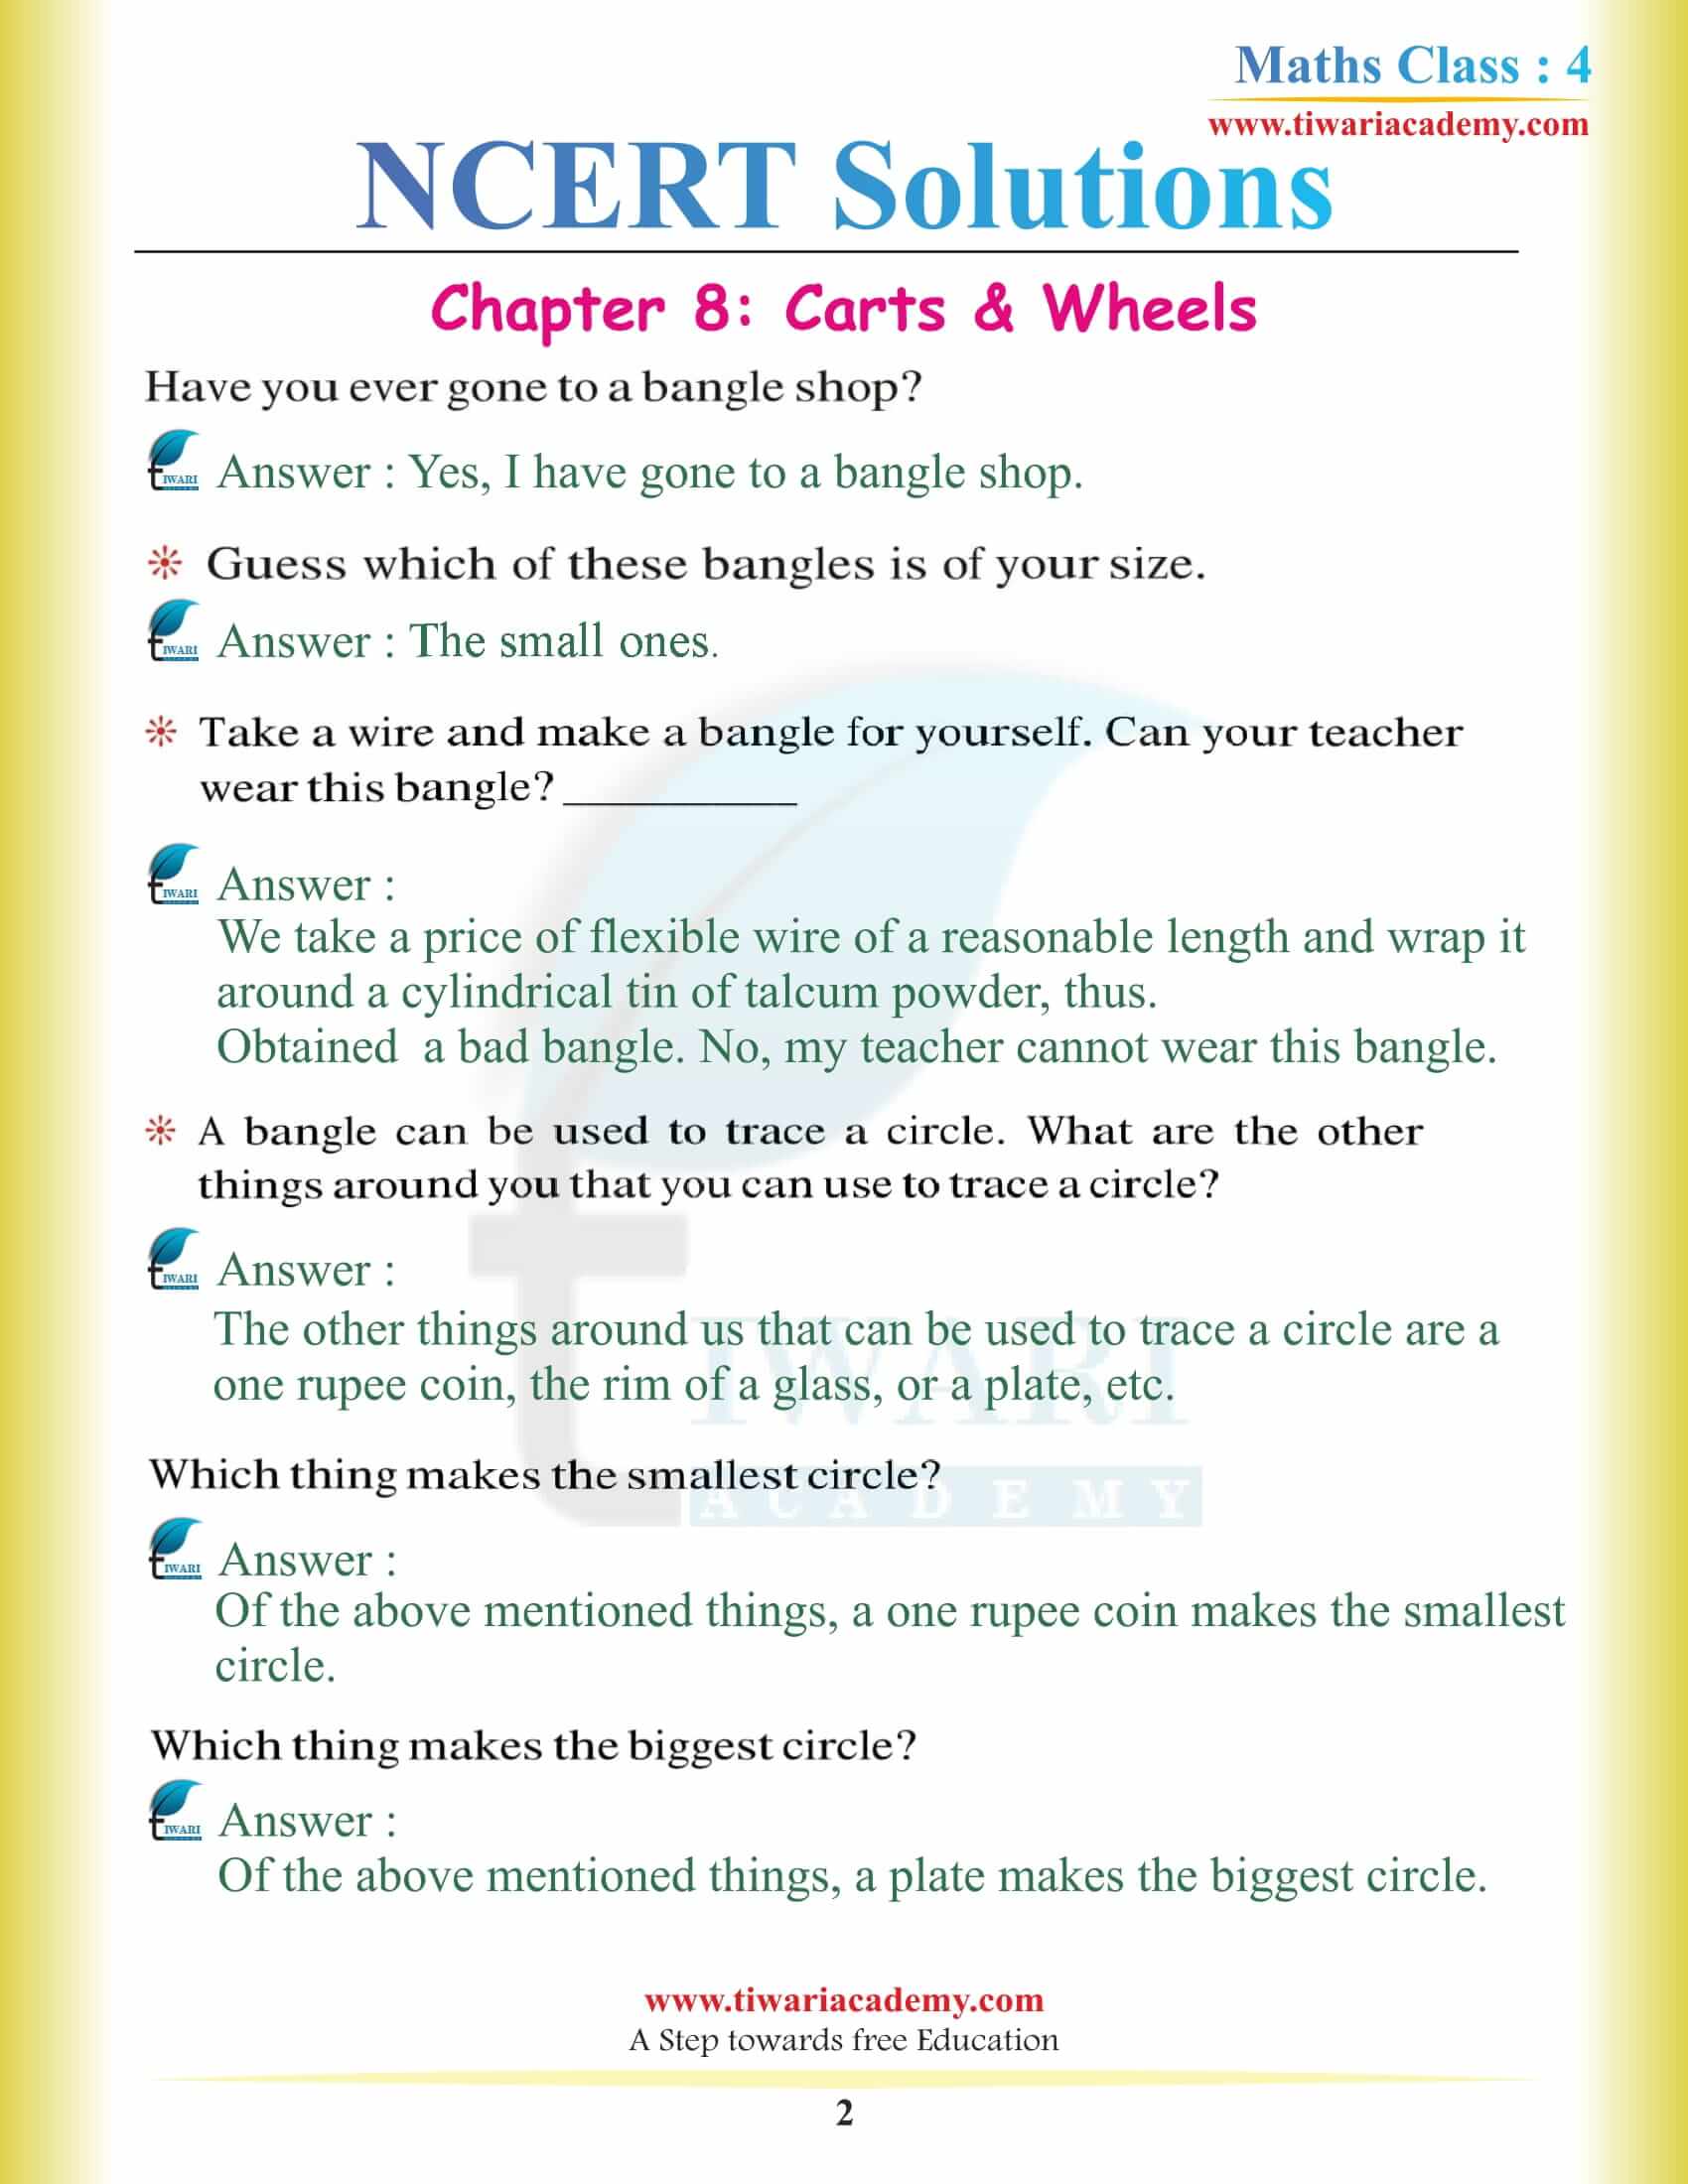 NCERT Solutions for Class 4 Maths Chapter 8